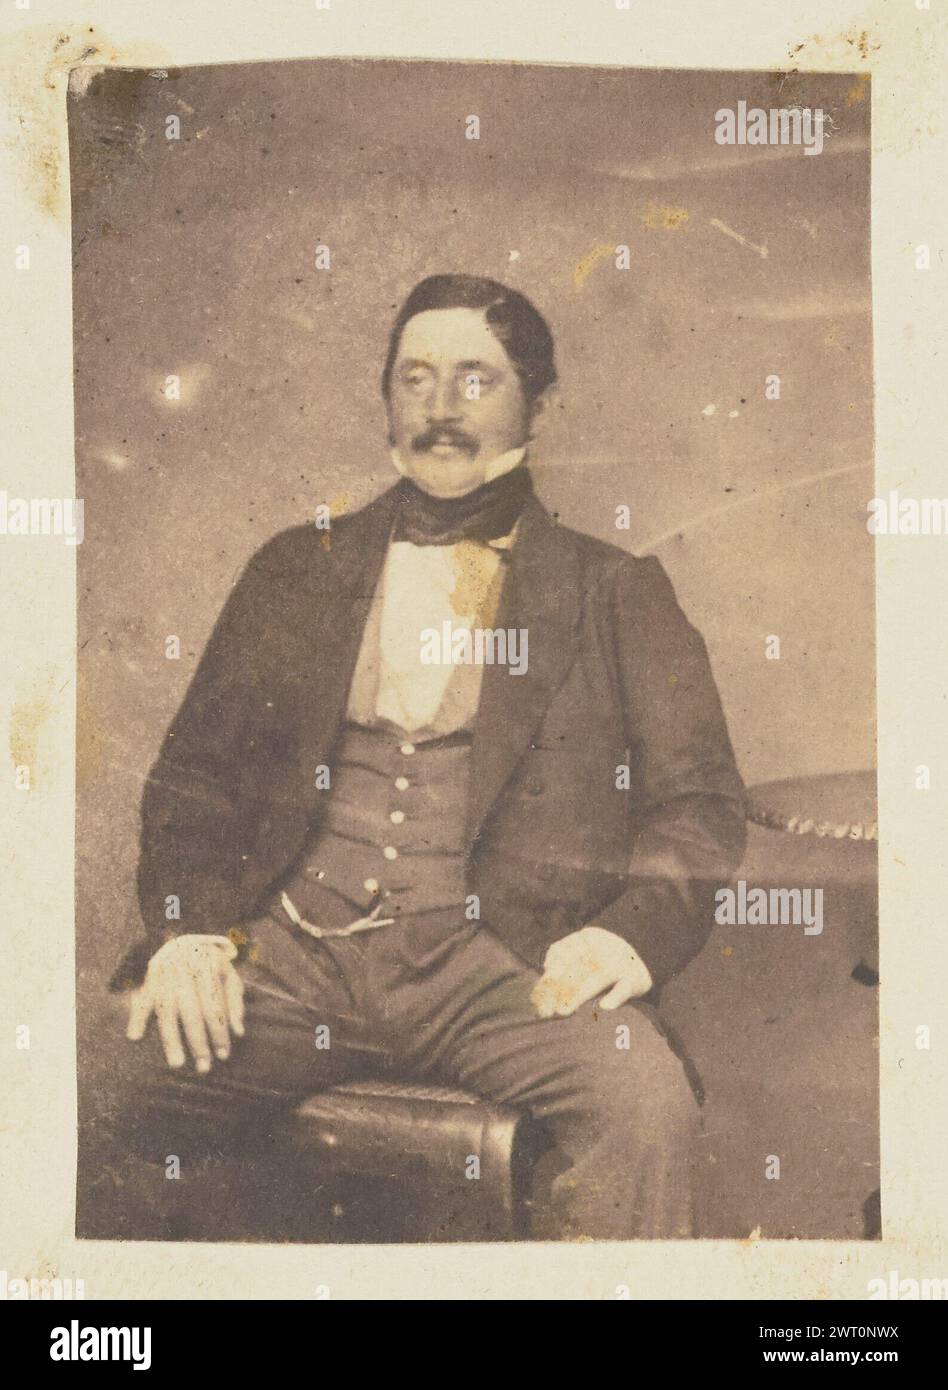 Ritratto di un uomo. Jakob Höflinger, fotografo (svizzero, 1819 - 1898) circa 1853-1860, ritratto di un uomo seduto con entrambe le mani appoggiate sulla parte superiore delle gambe. L'uomo ha i baffi e indossa un gilet con una catena di orologi. Foto Stock